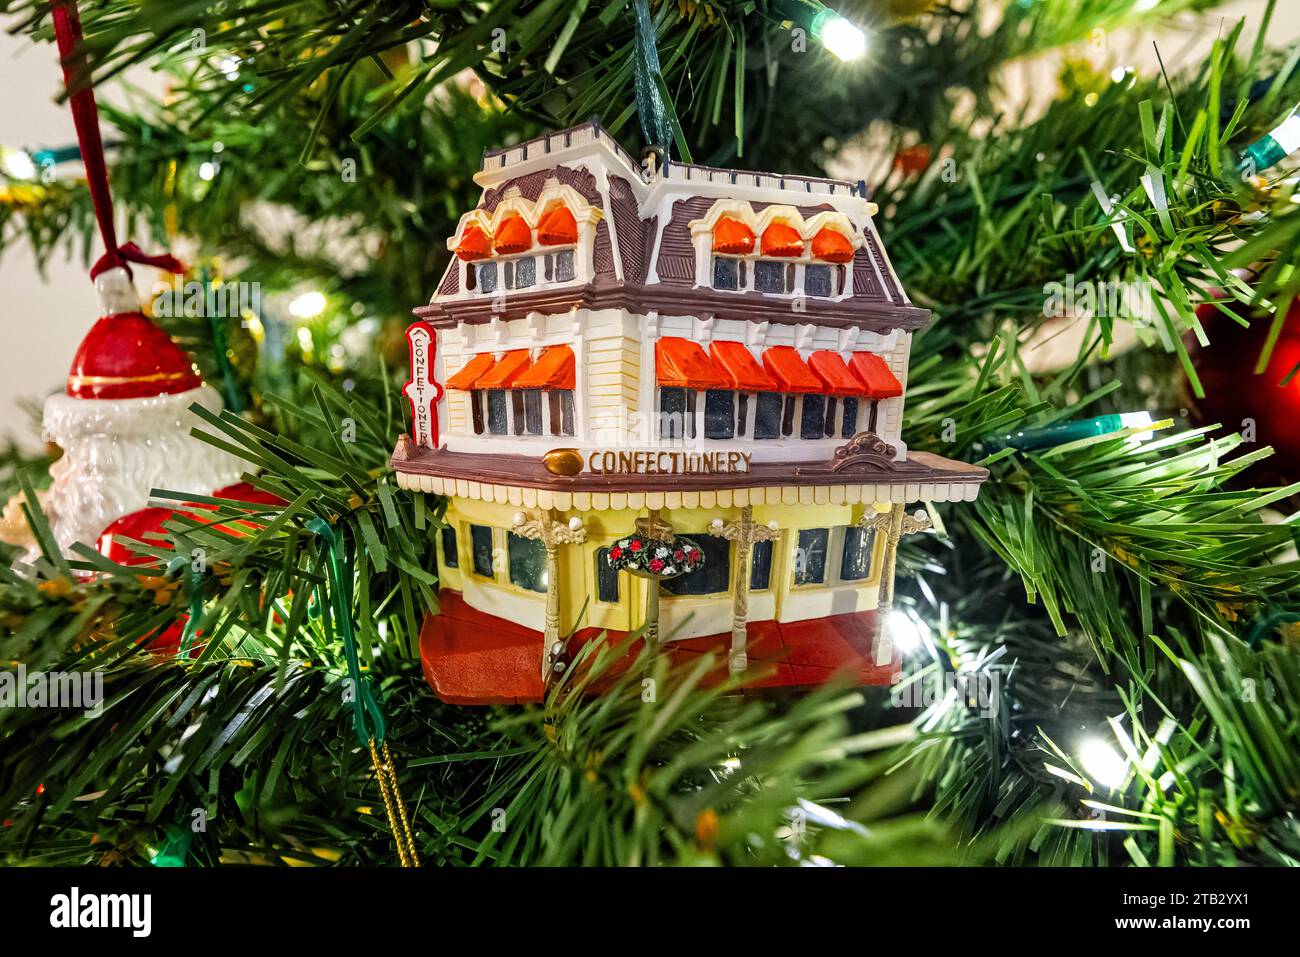 Amerikanischer Süßwarenladen Weihnachtsschmuck hängt am Weihnachtsbaum Stockfoto